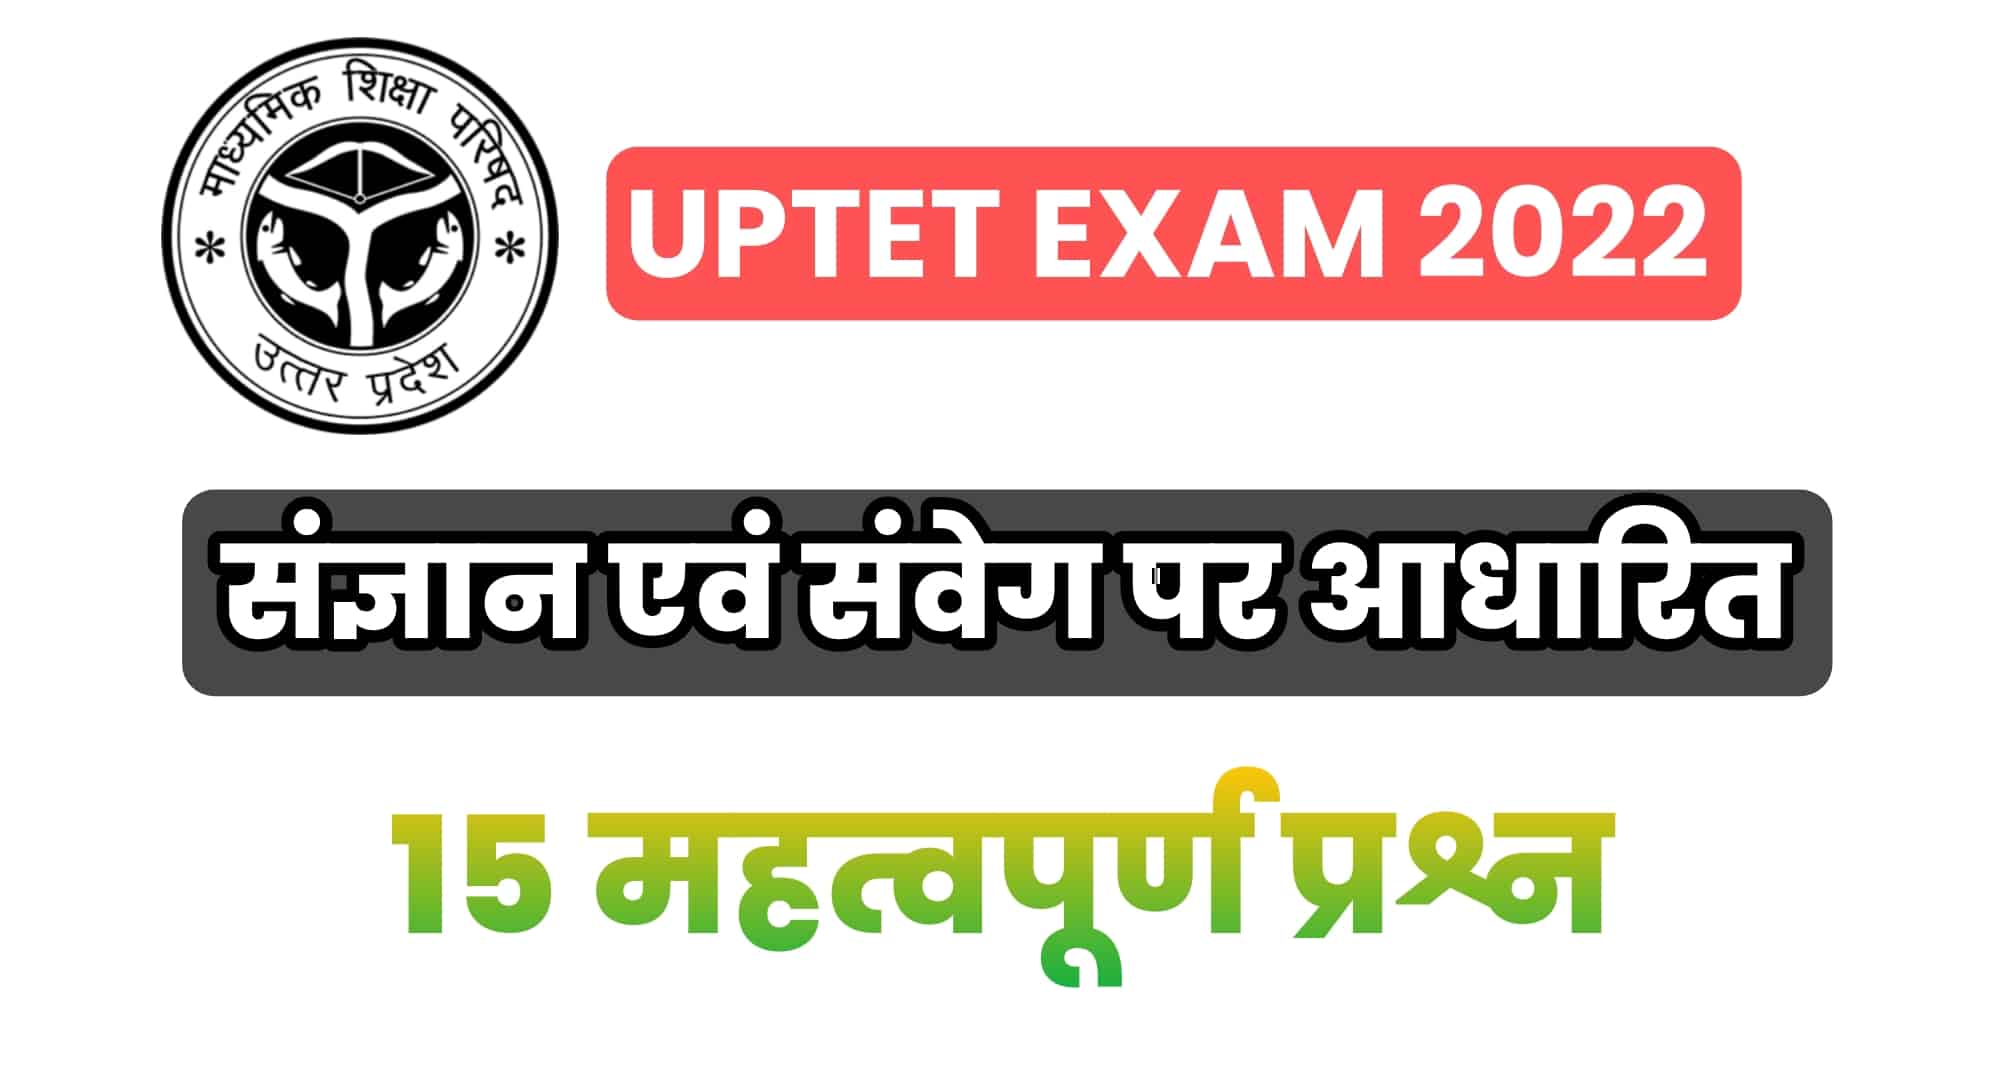 UPTET Exam 2022 : (बाल विकास) संज्ञान एवं संवेग पर आधारित 15 महत्वपूर्ण प्रश्न